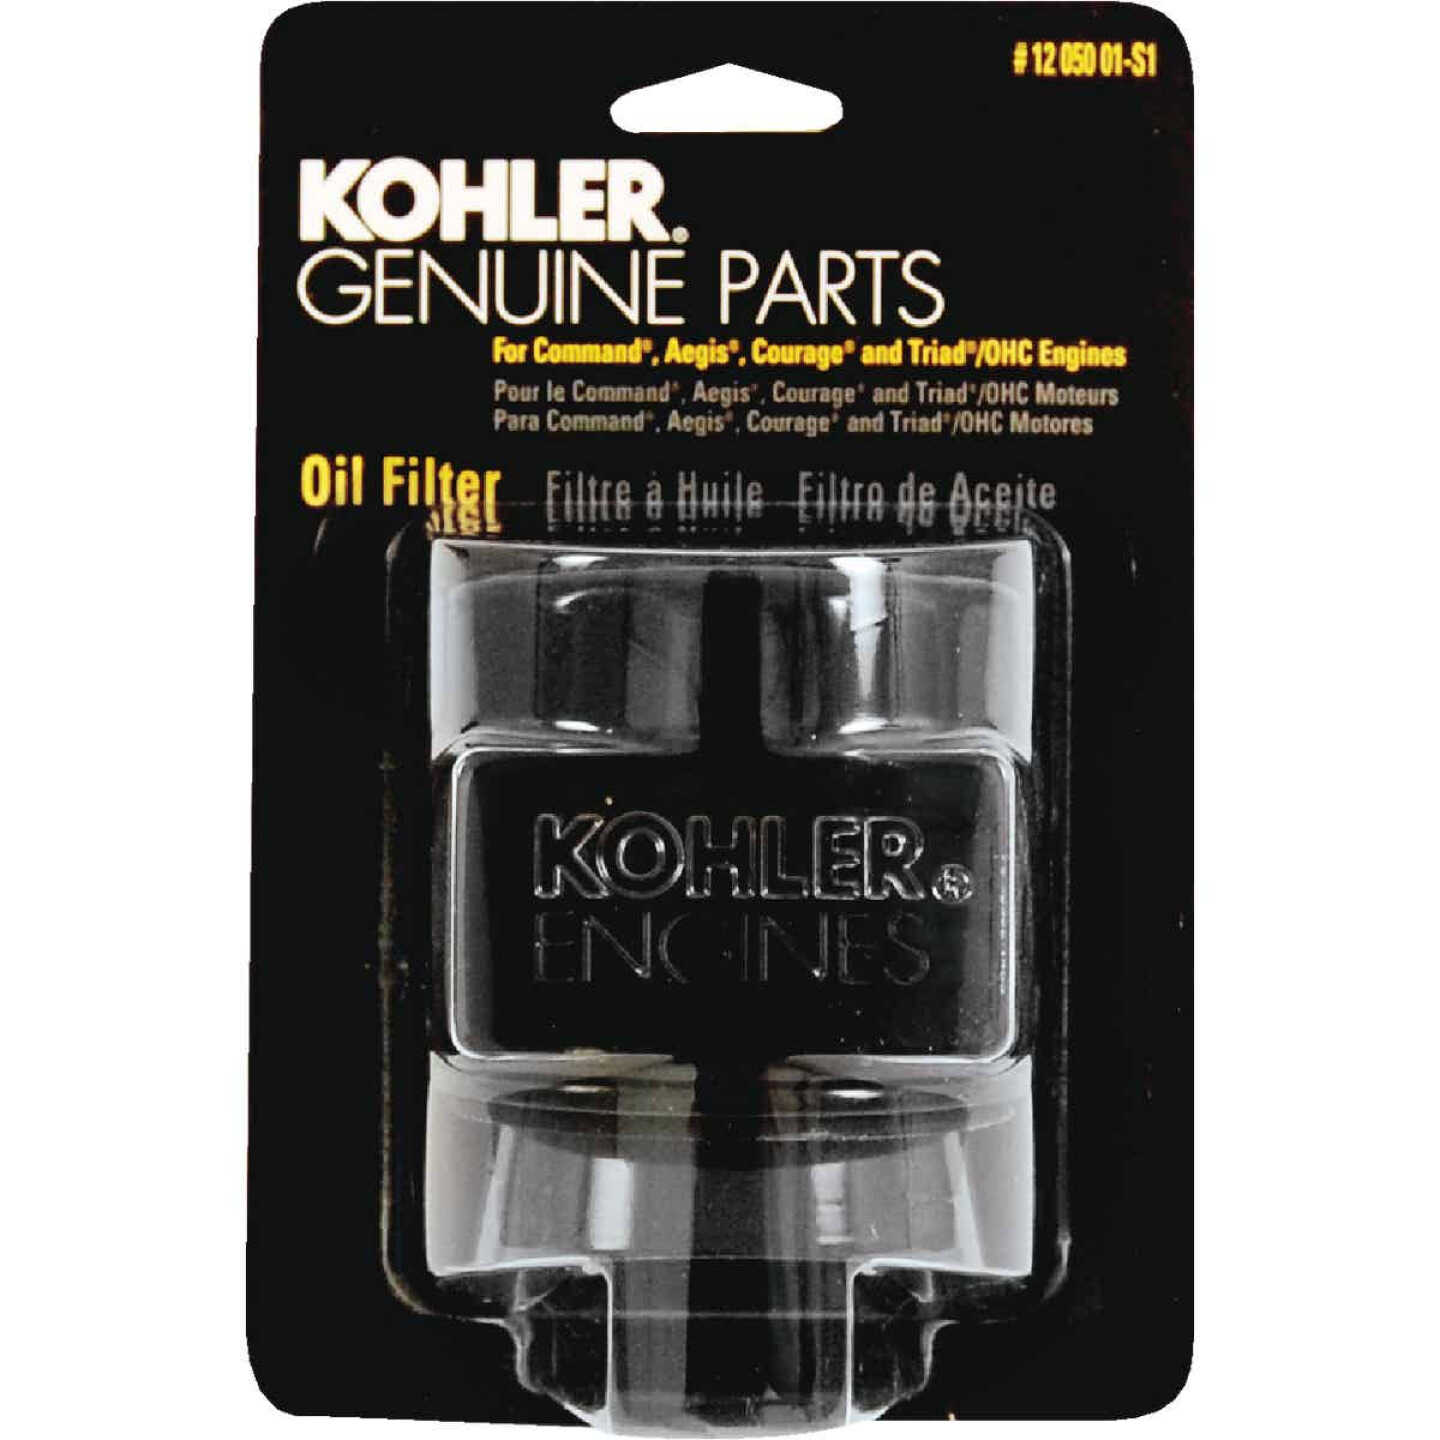 Kohler Full Flow Oil Filter Image 2